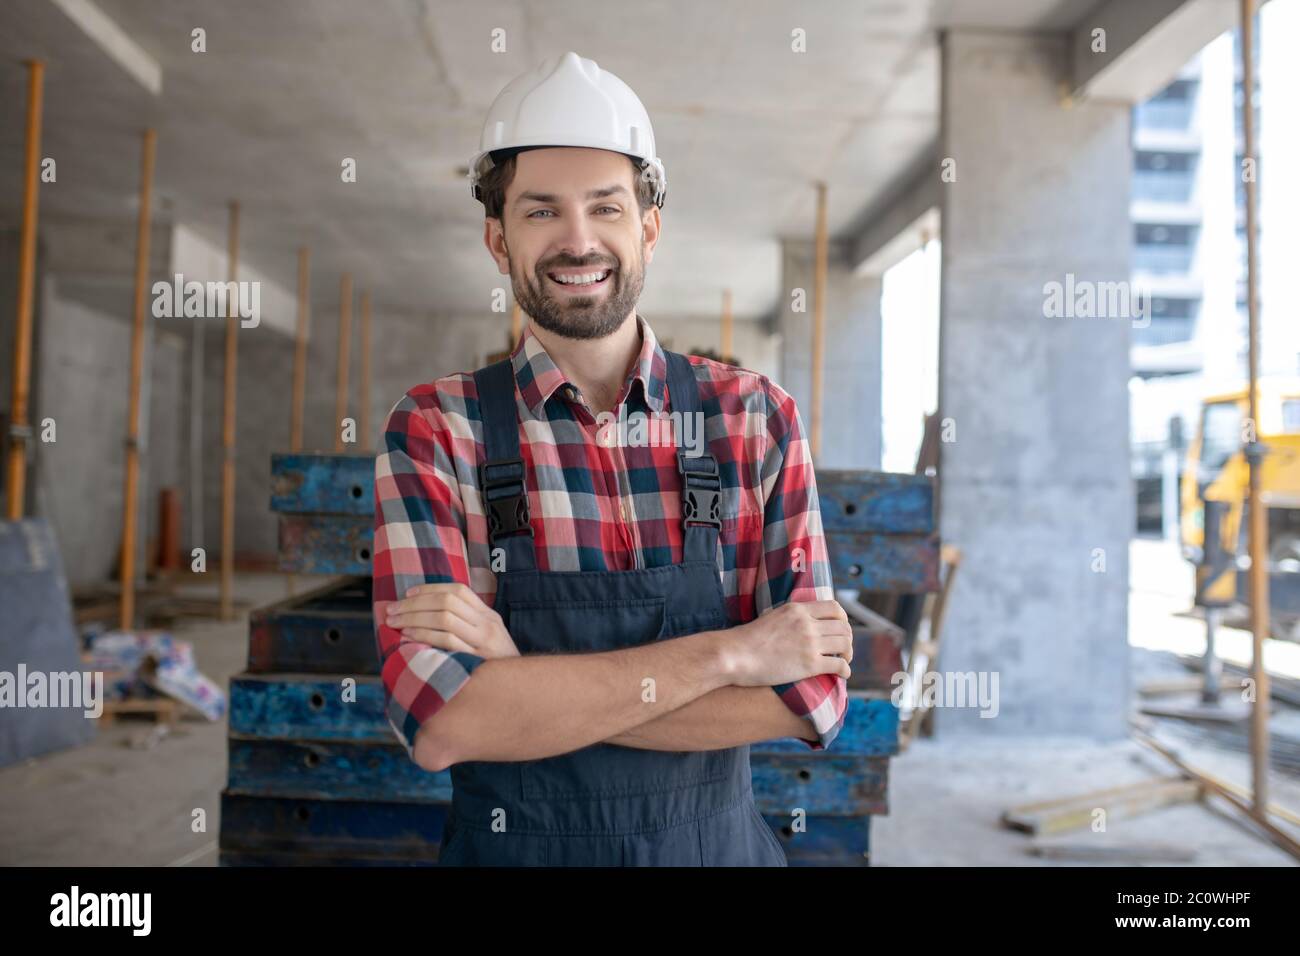 Bauarbeiter in Helm und kariertem Hemd stehend mit gefalteten Armen Stockfoto